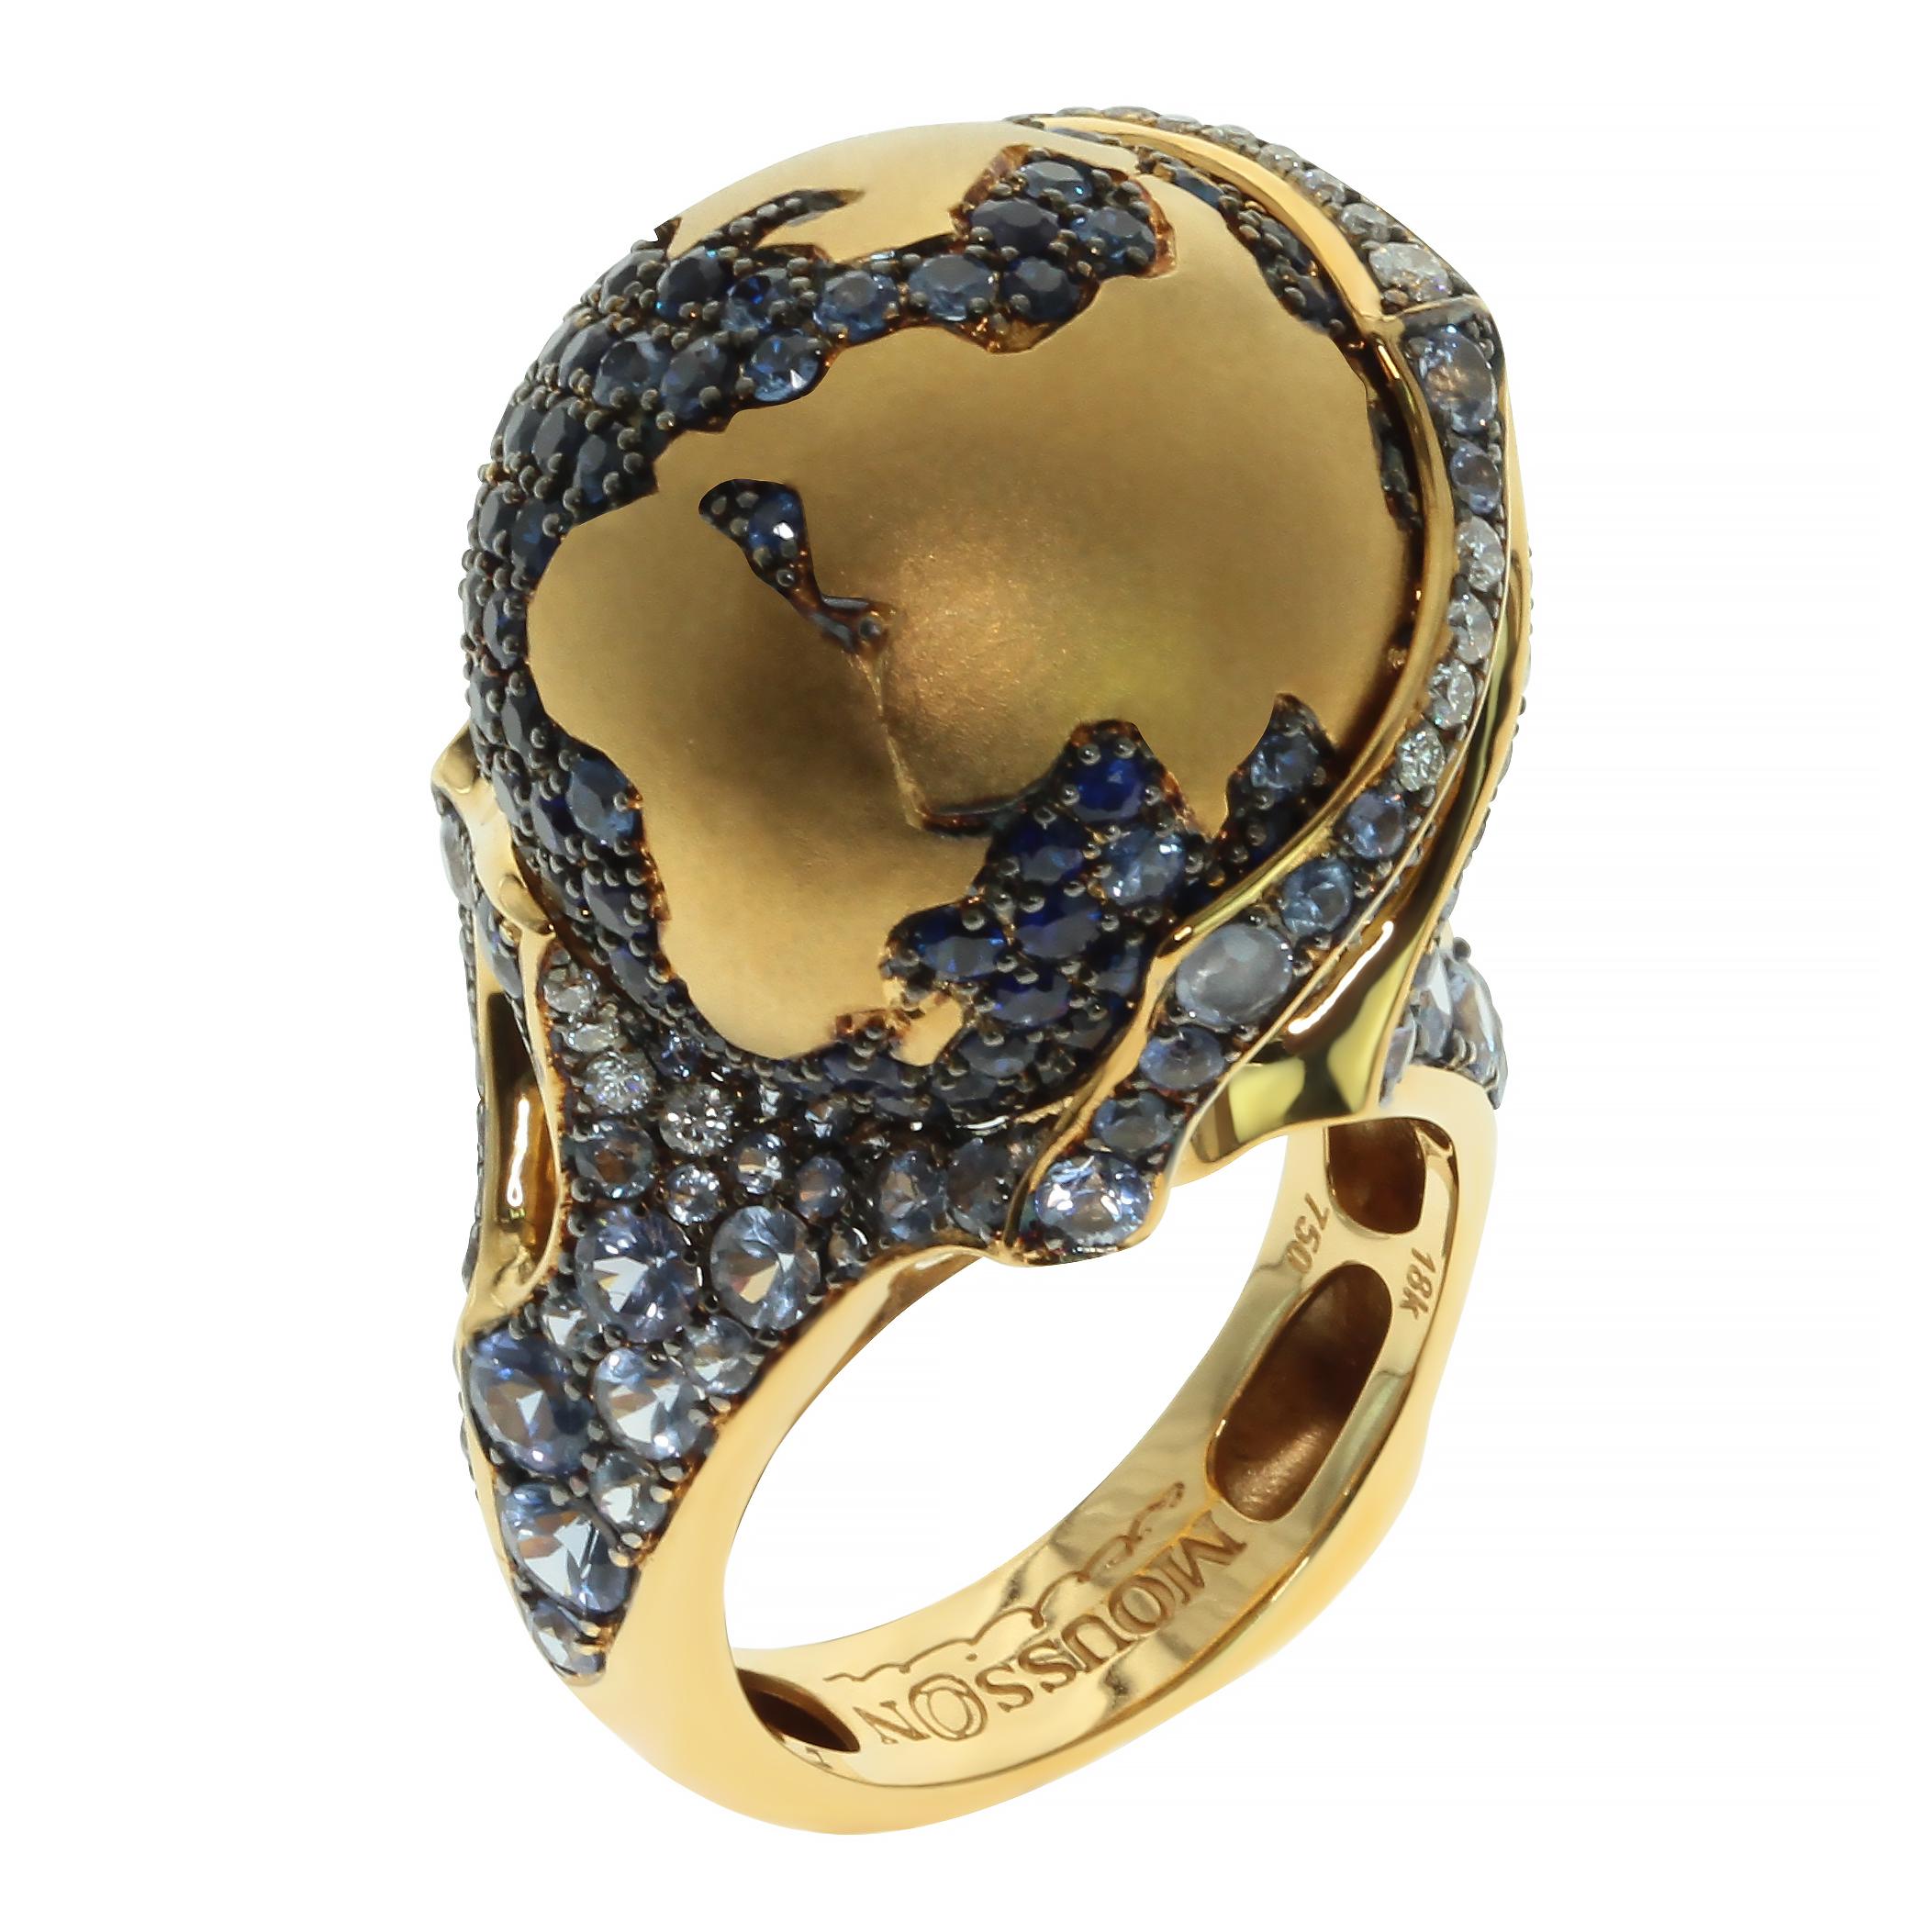 Globe Ring Diamanten Saphir 18 Karat Gelbgold
Würden Sie gerne die ganze Welt an Ihrem Finger haben? Sie haben diese Möglichkeit. One of a kind Globe Ring haben super-stylish Design, mit fünf-farbigen blauen Saphiren und Diamanten gesetzt. Der